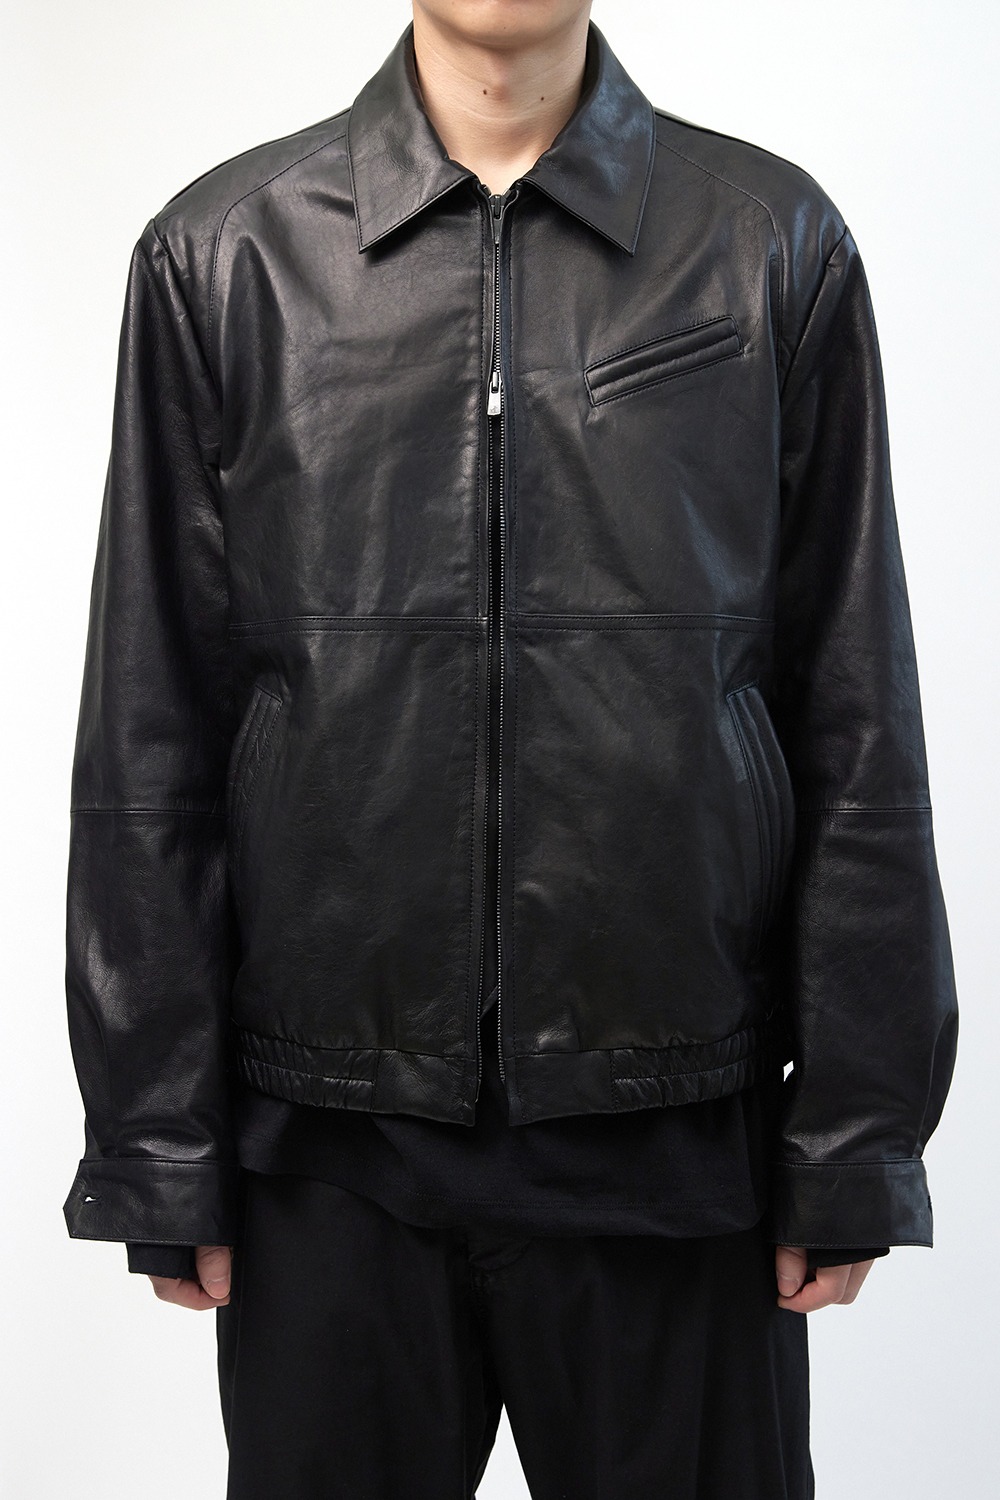 Stitched Volume Leather Jacket-Lamb Skin Black